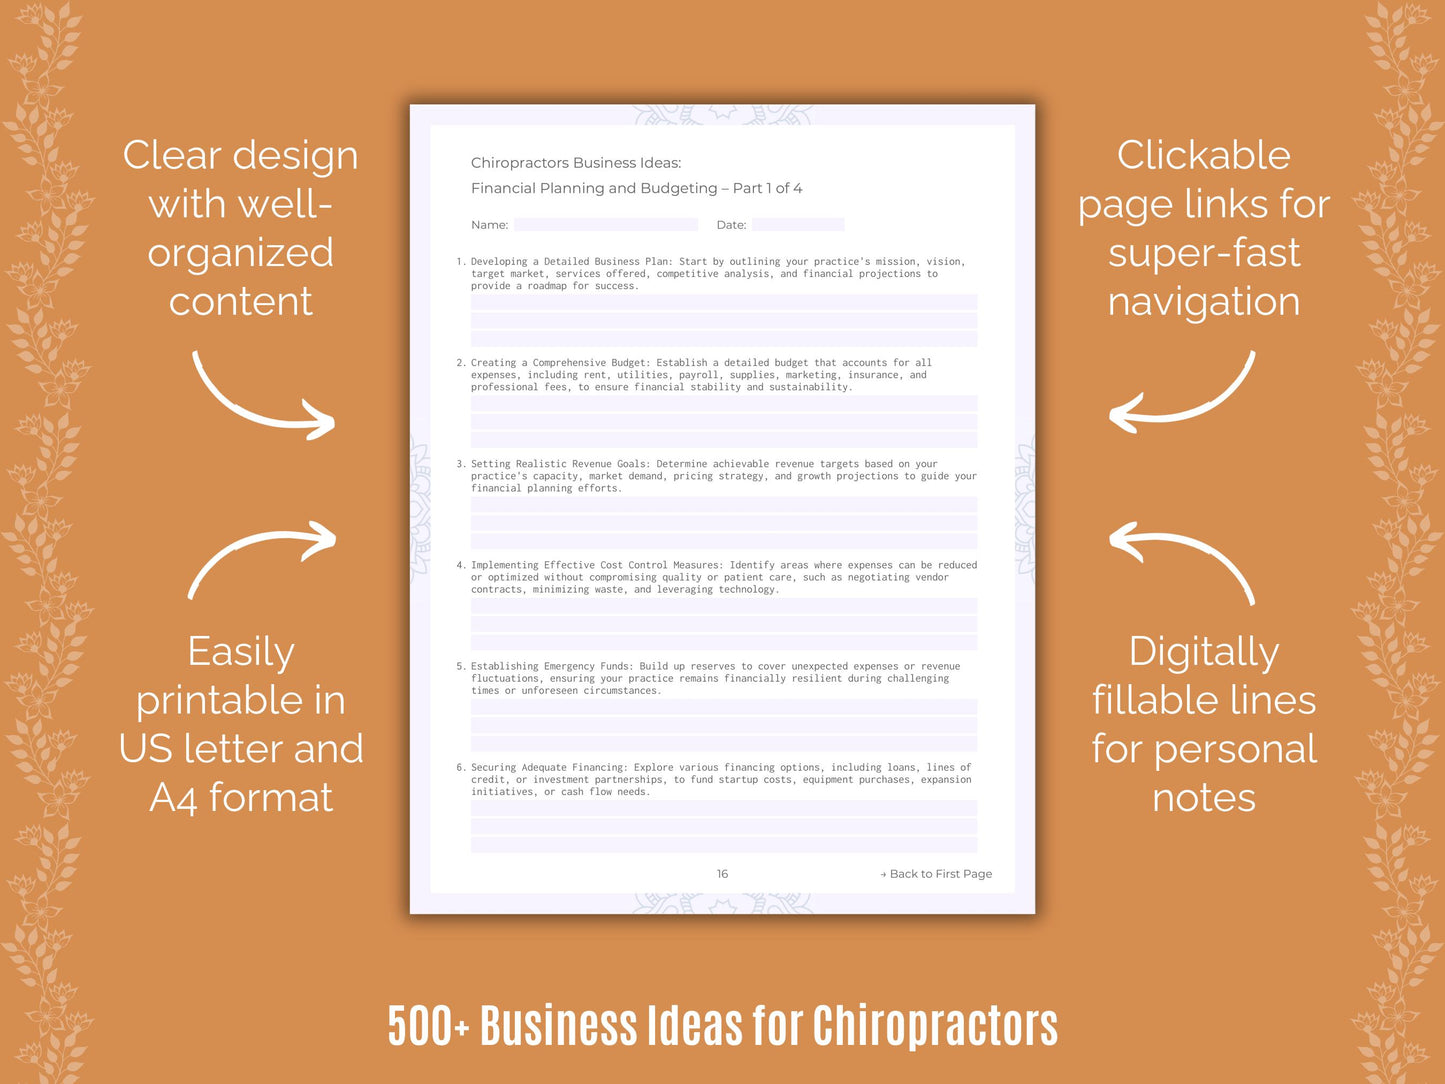 Chiropractors Business Ideas